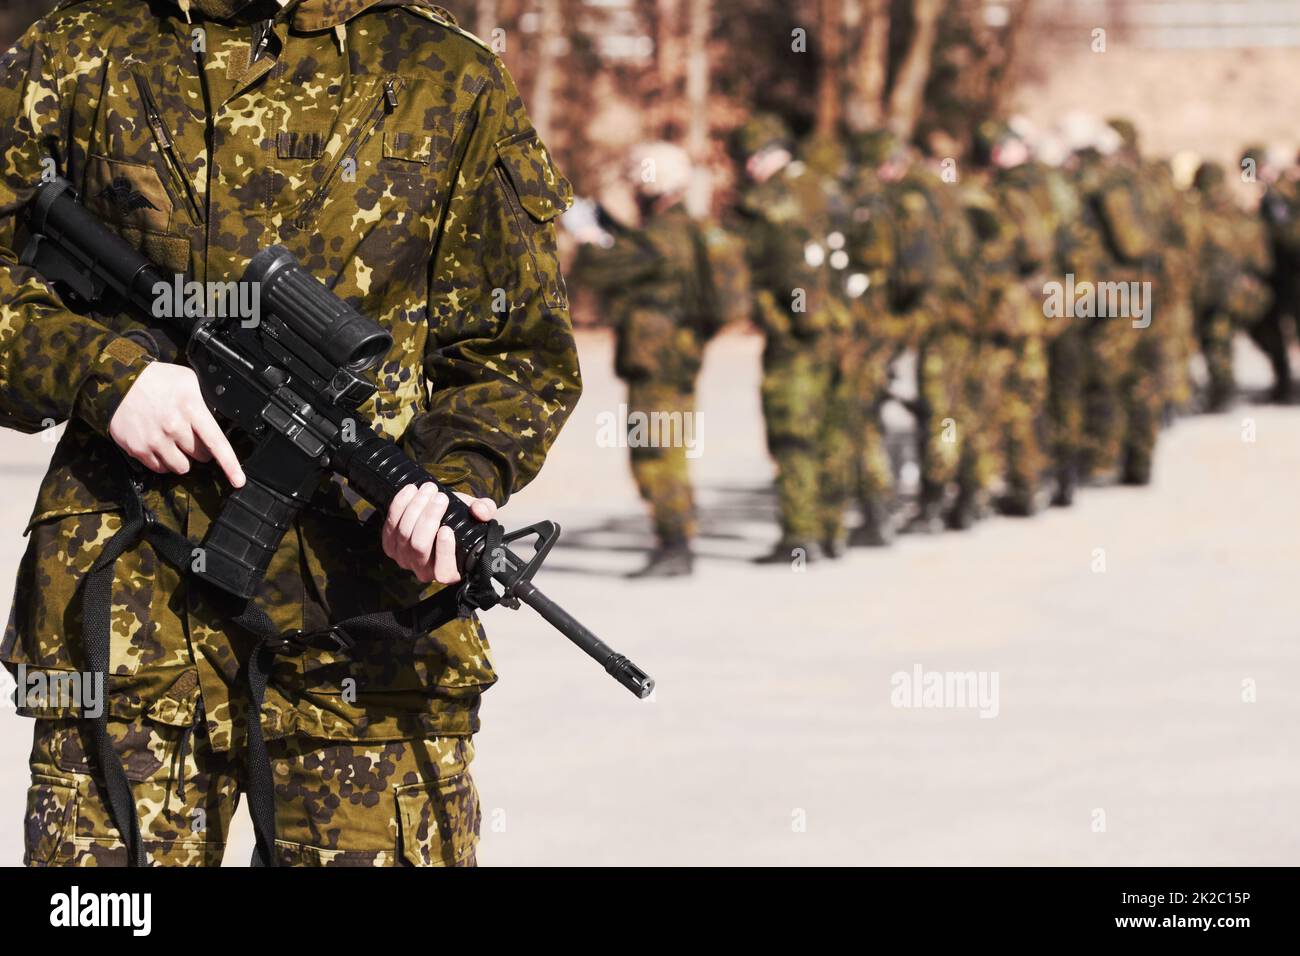 Bereit für alles. Ein Soldat, der mit einem Gewehr steht, und seine Mitsoldaten im Hintergrund. Stockfoto